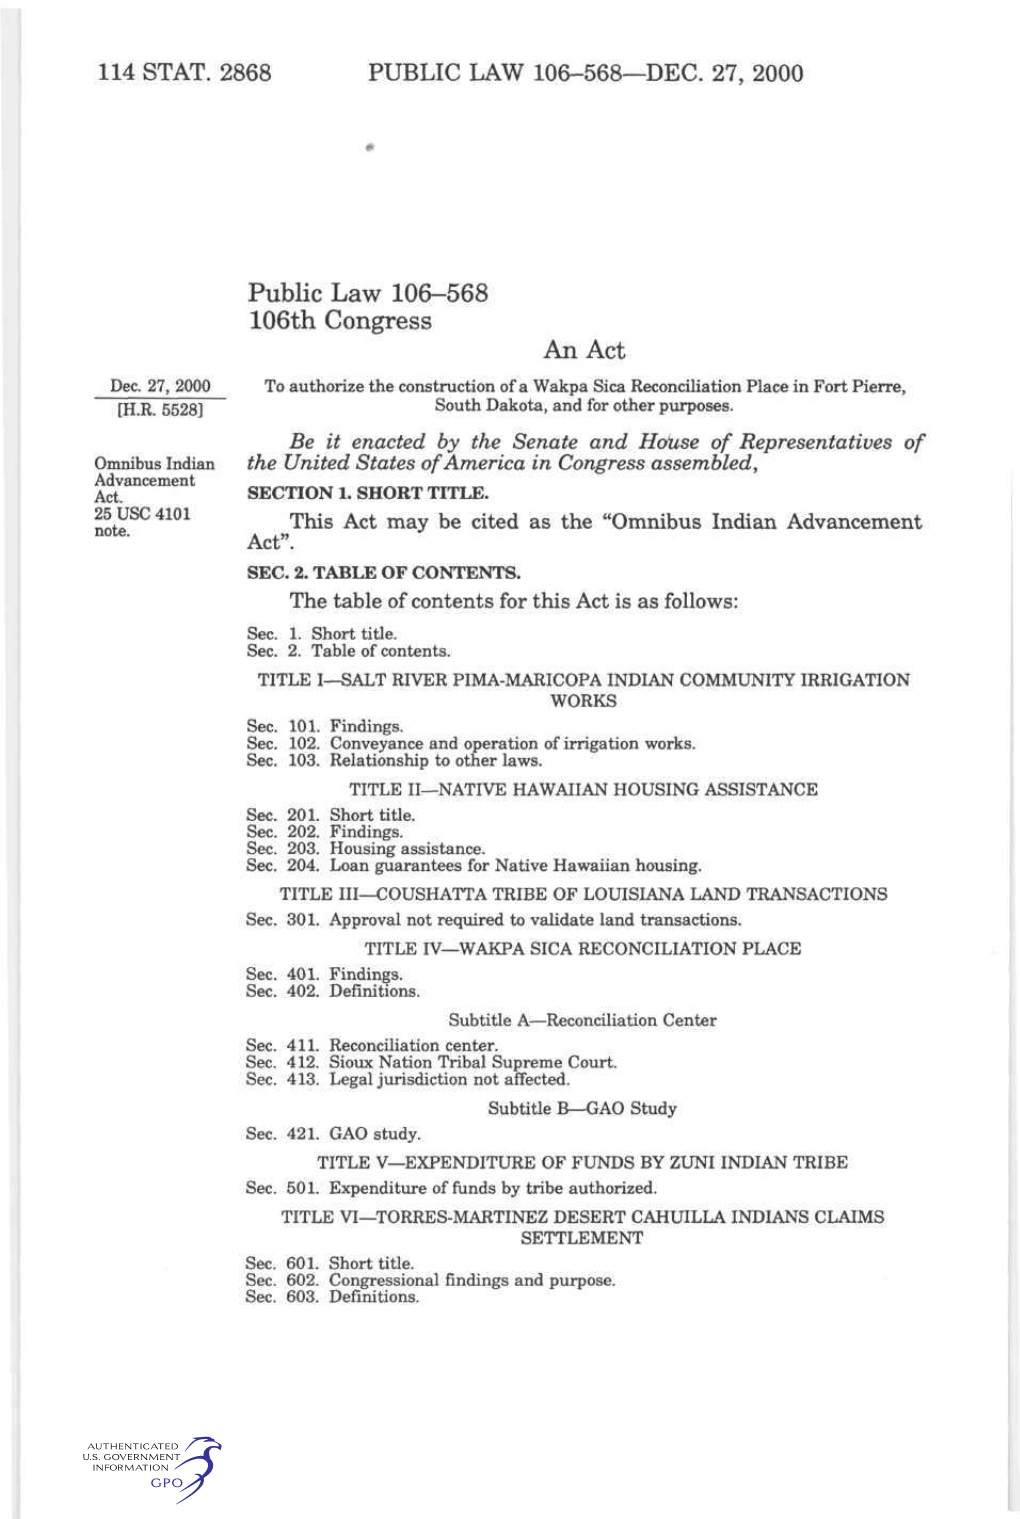 114 Stat. 2868 Public Law 106-568—Dec. 27, 2000